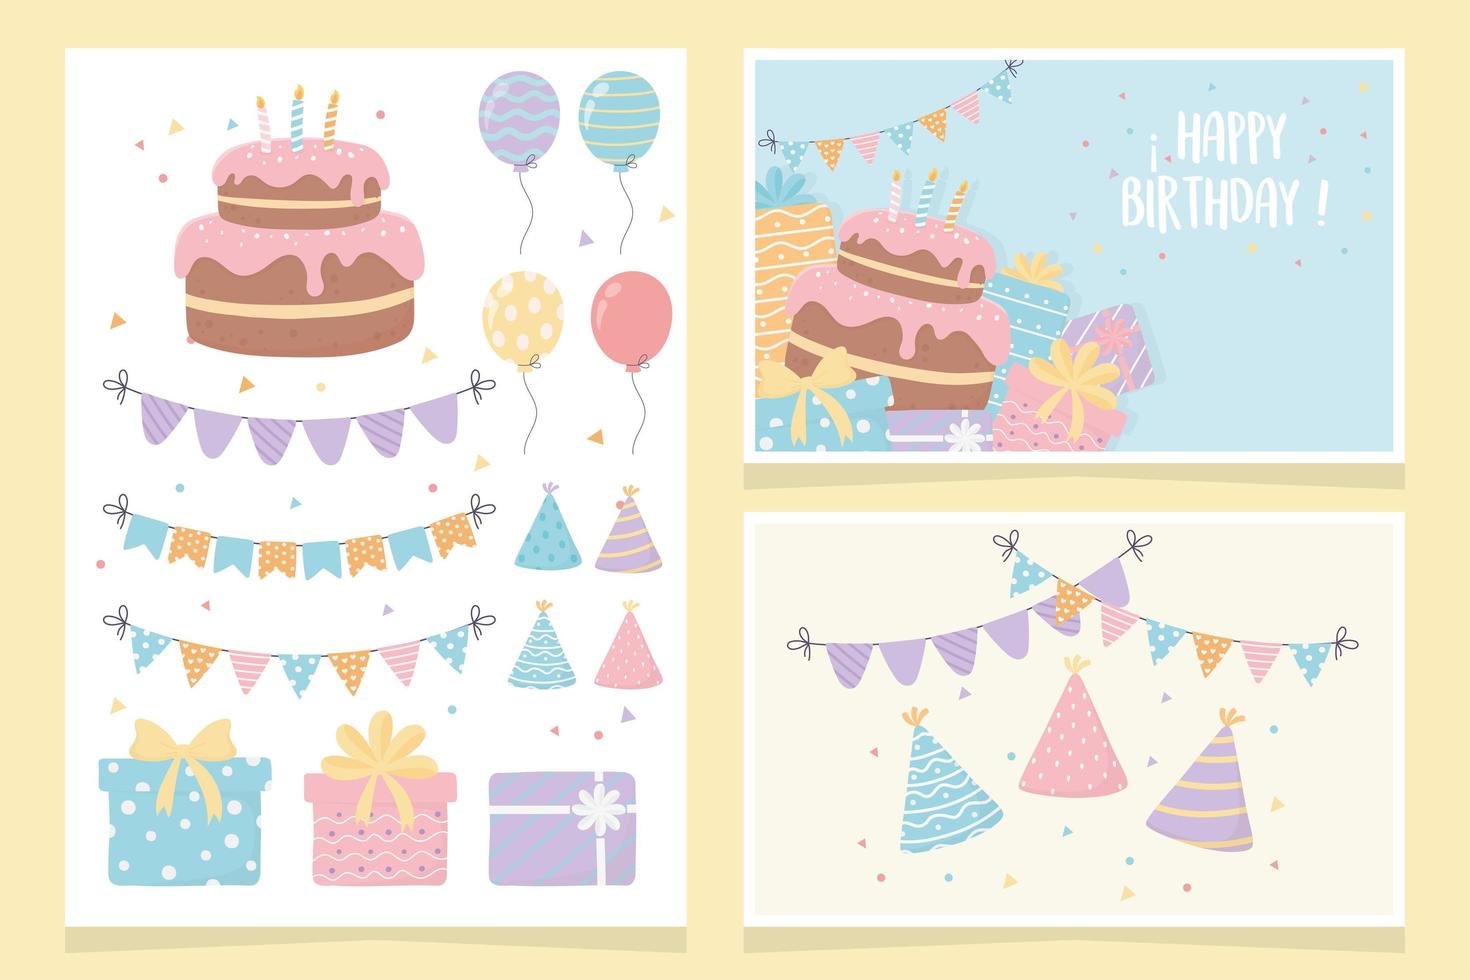 joyeux anniversaire gâteau cadeaux ballons fanions fête décoration cartes vecteur